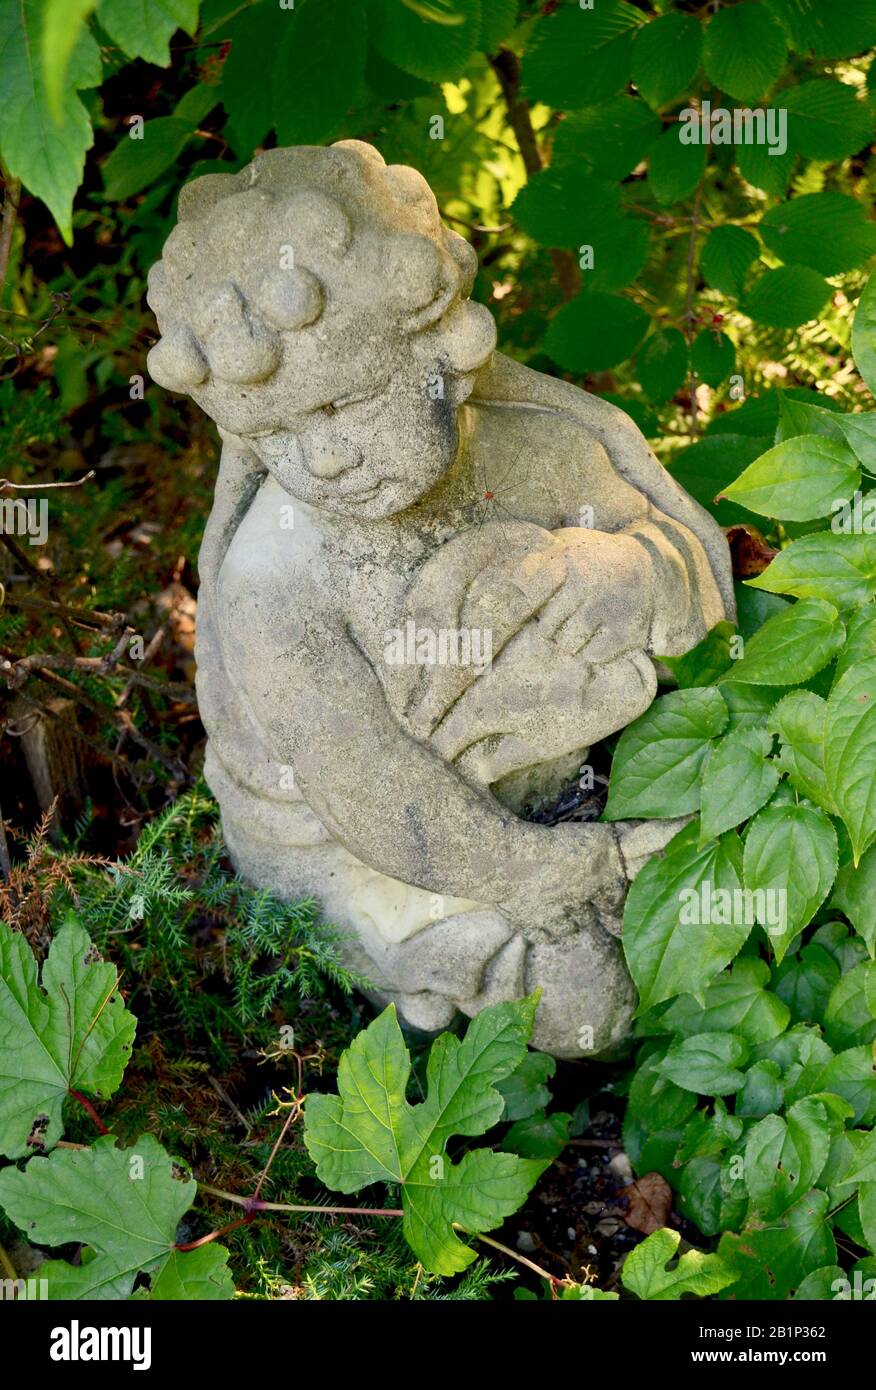 Alte Cherub-Statue, eingebettet in das Laub des Gartens. Nahaufnahme. Stockfoto